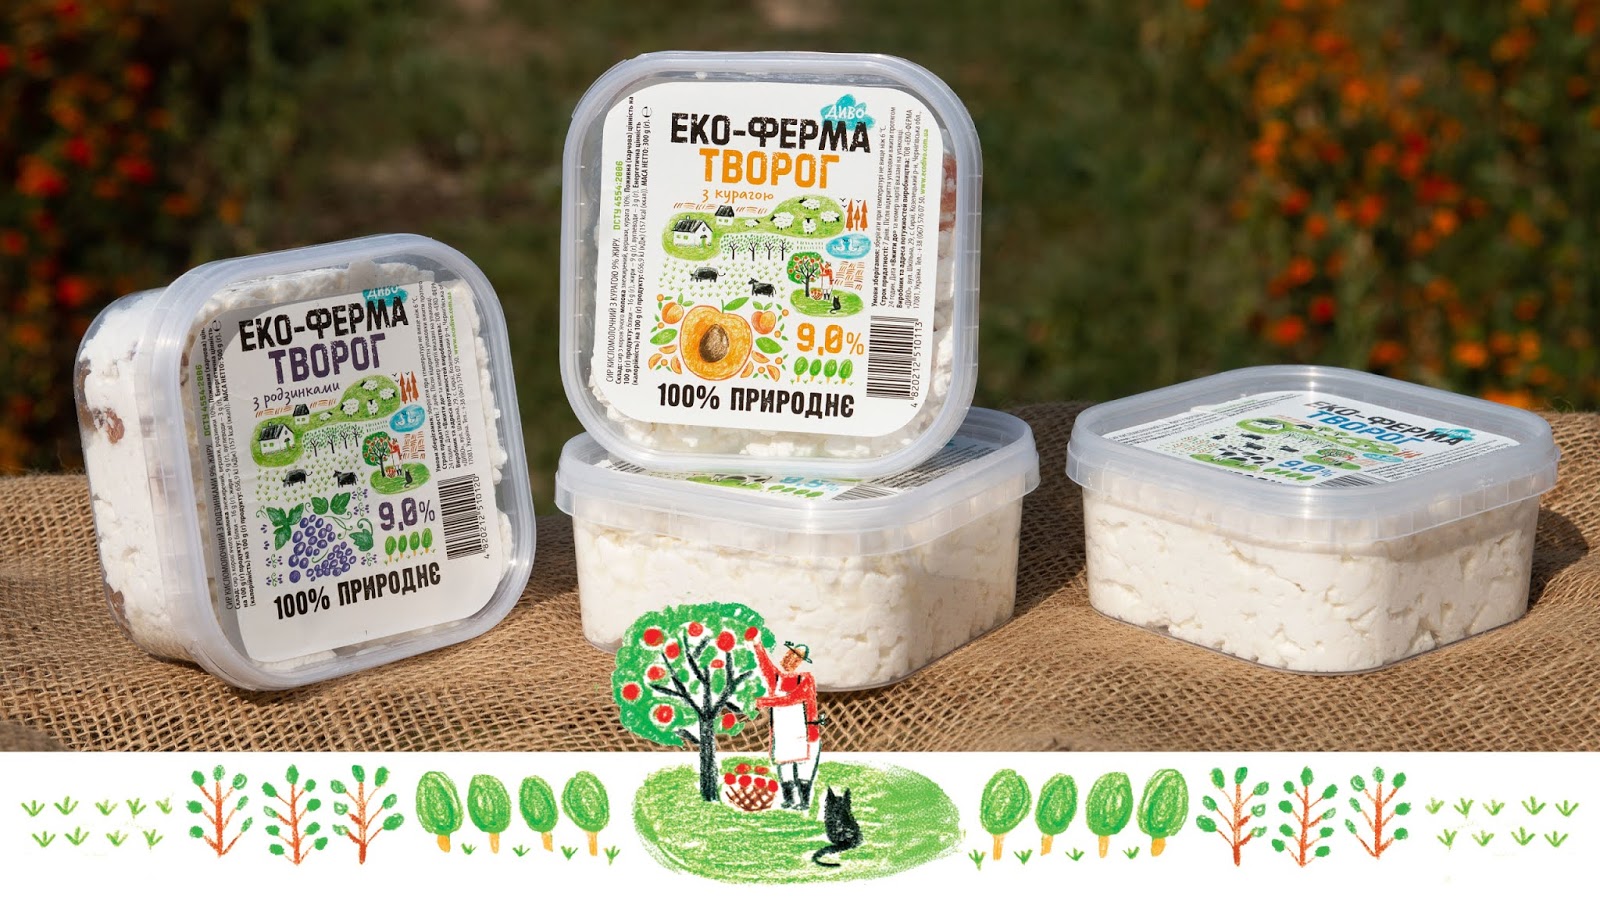 Dyvo原生态牛奶包装设计